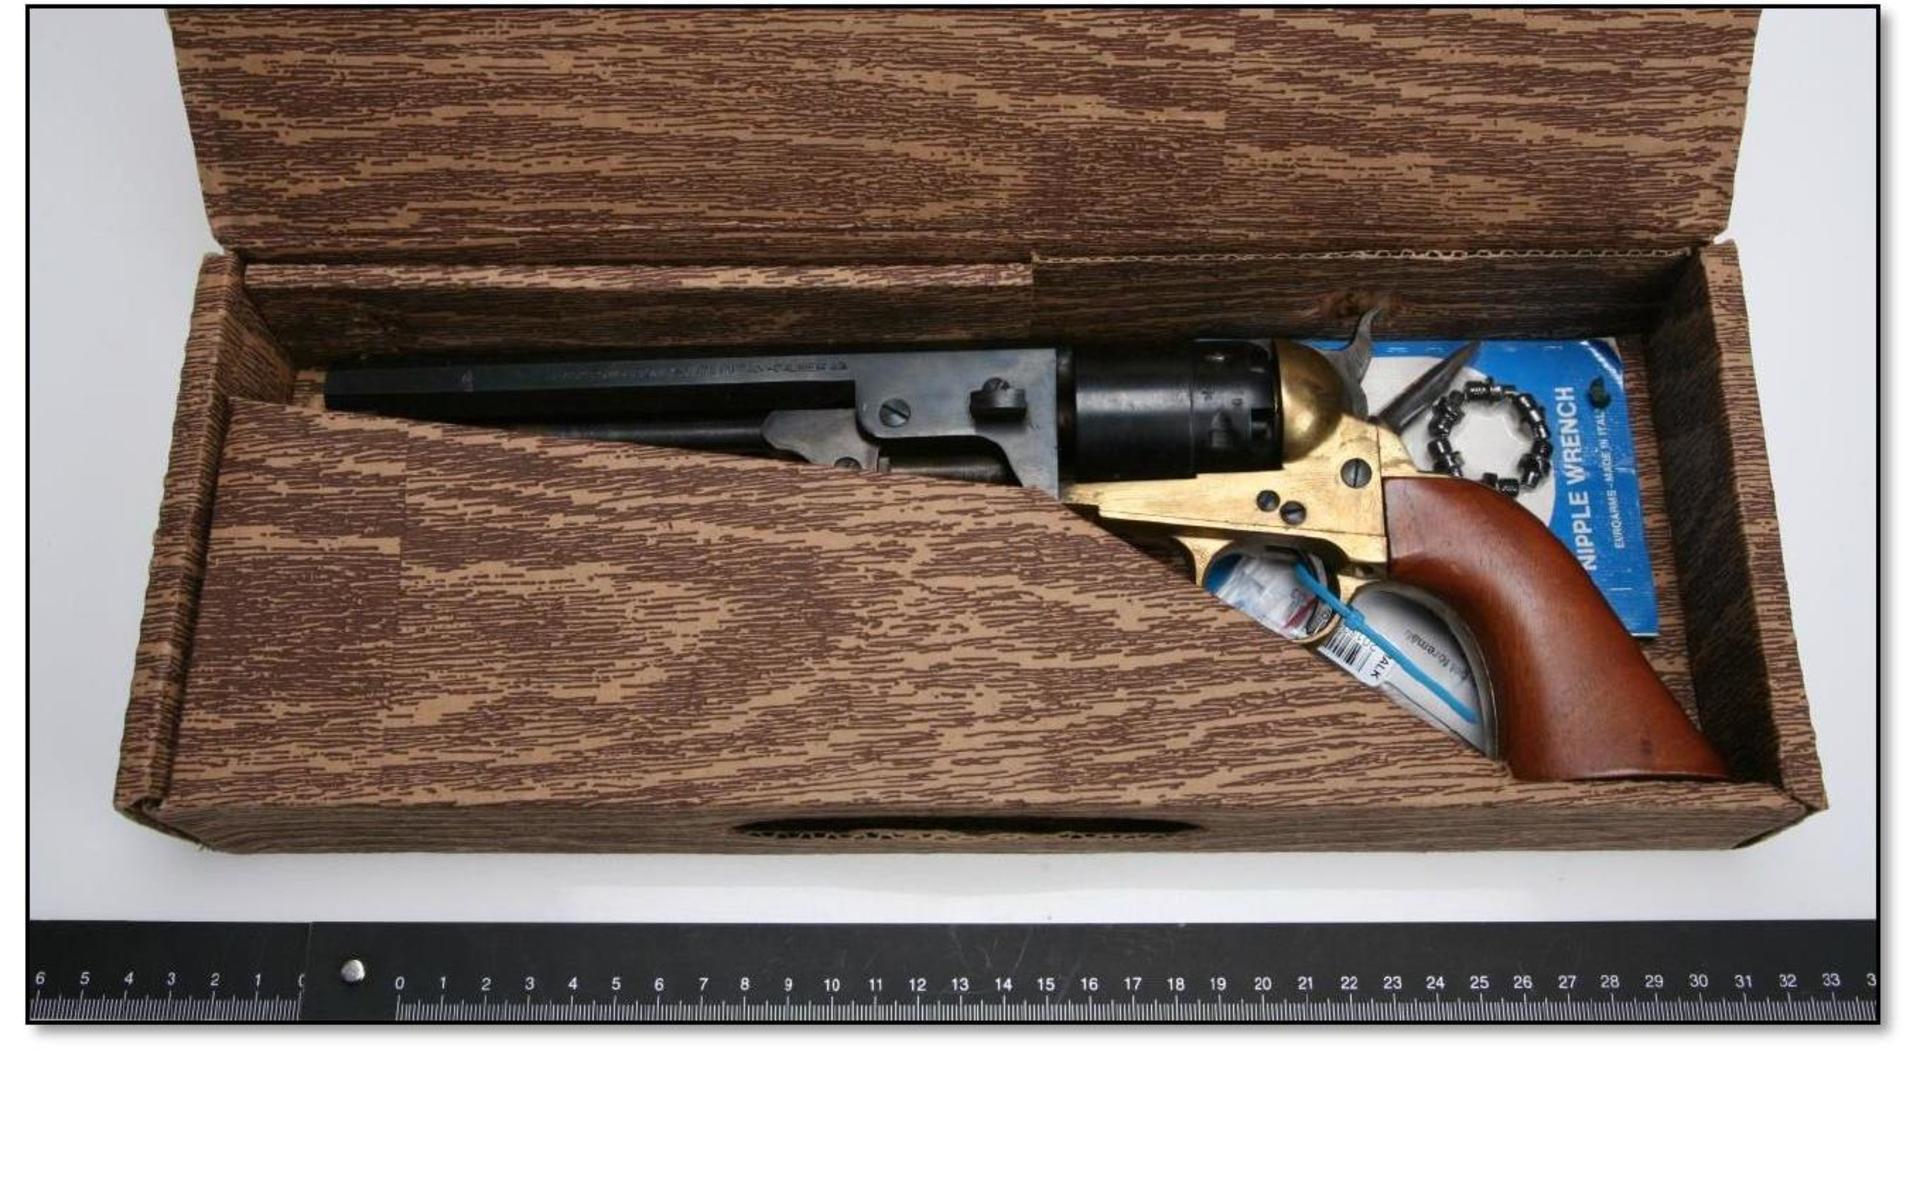 Lådan innehöll en revolver, extra nipplar och ettmonteringsverktyg. Bild: Polisen